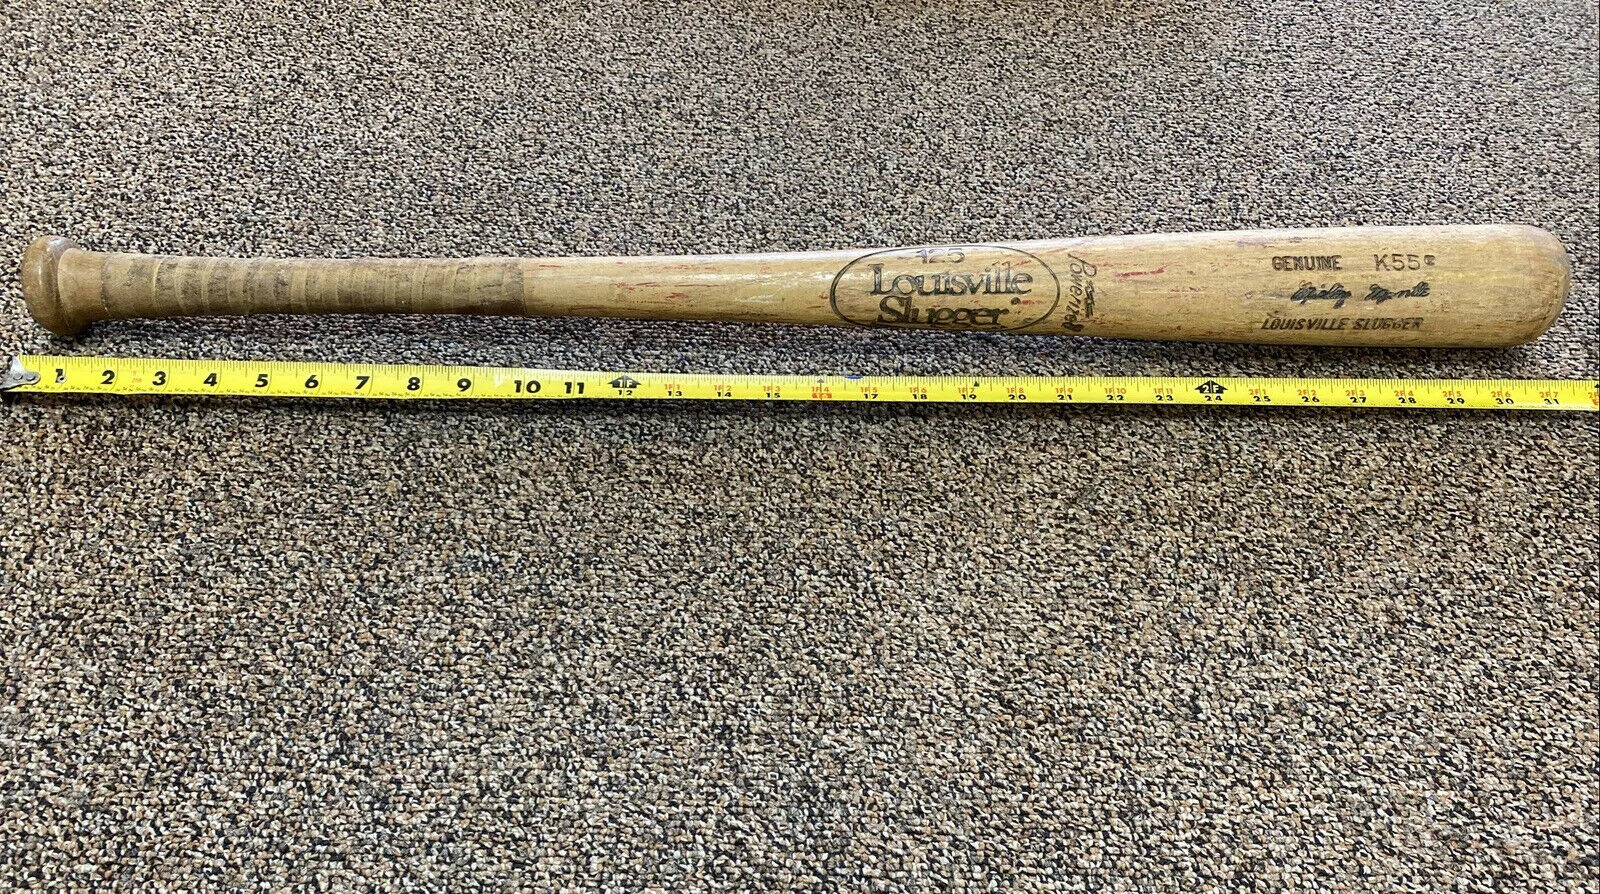 Louisville Slugger 125 Genuine K55 Mickey Mantle 31” Wood Bat Powerized Yankees